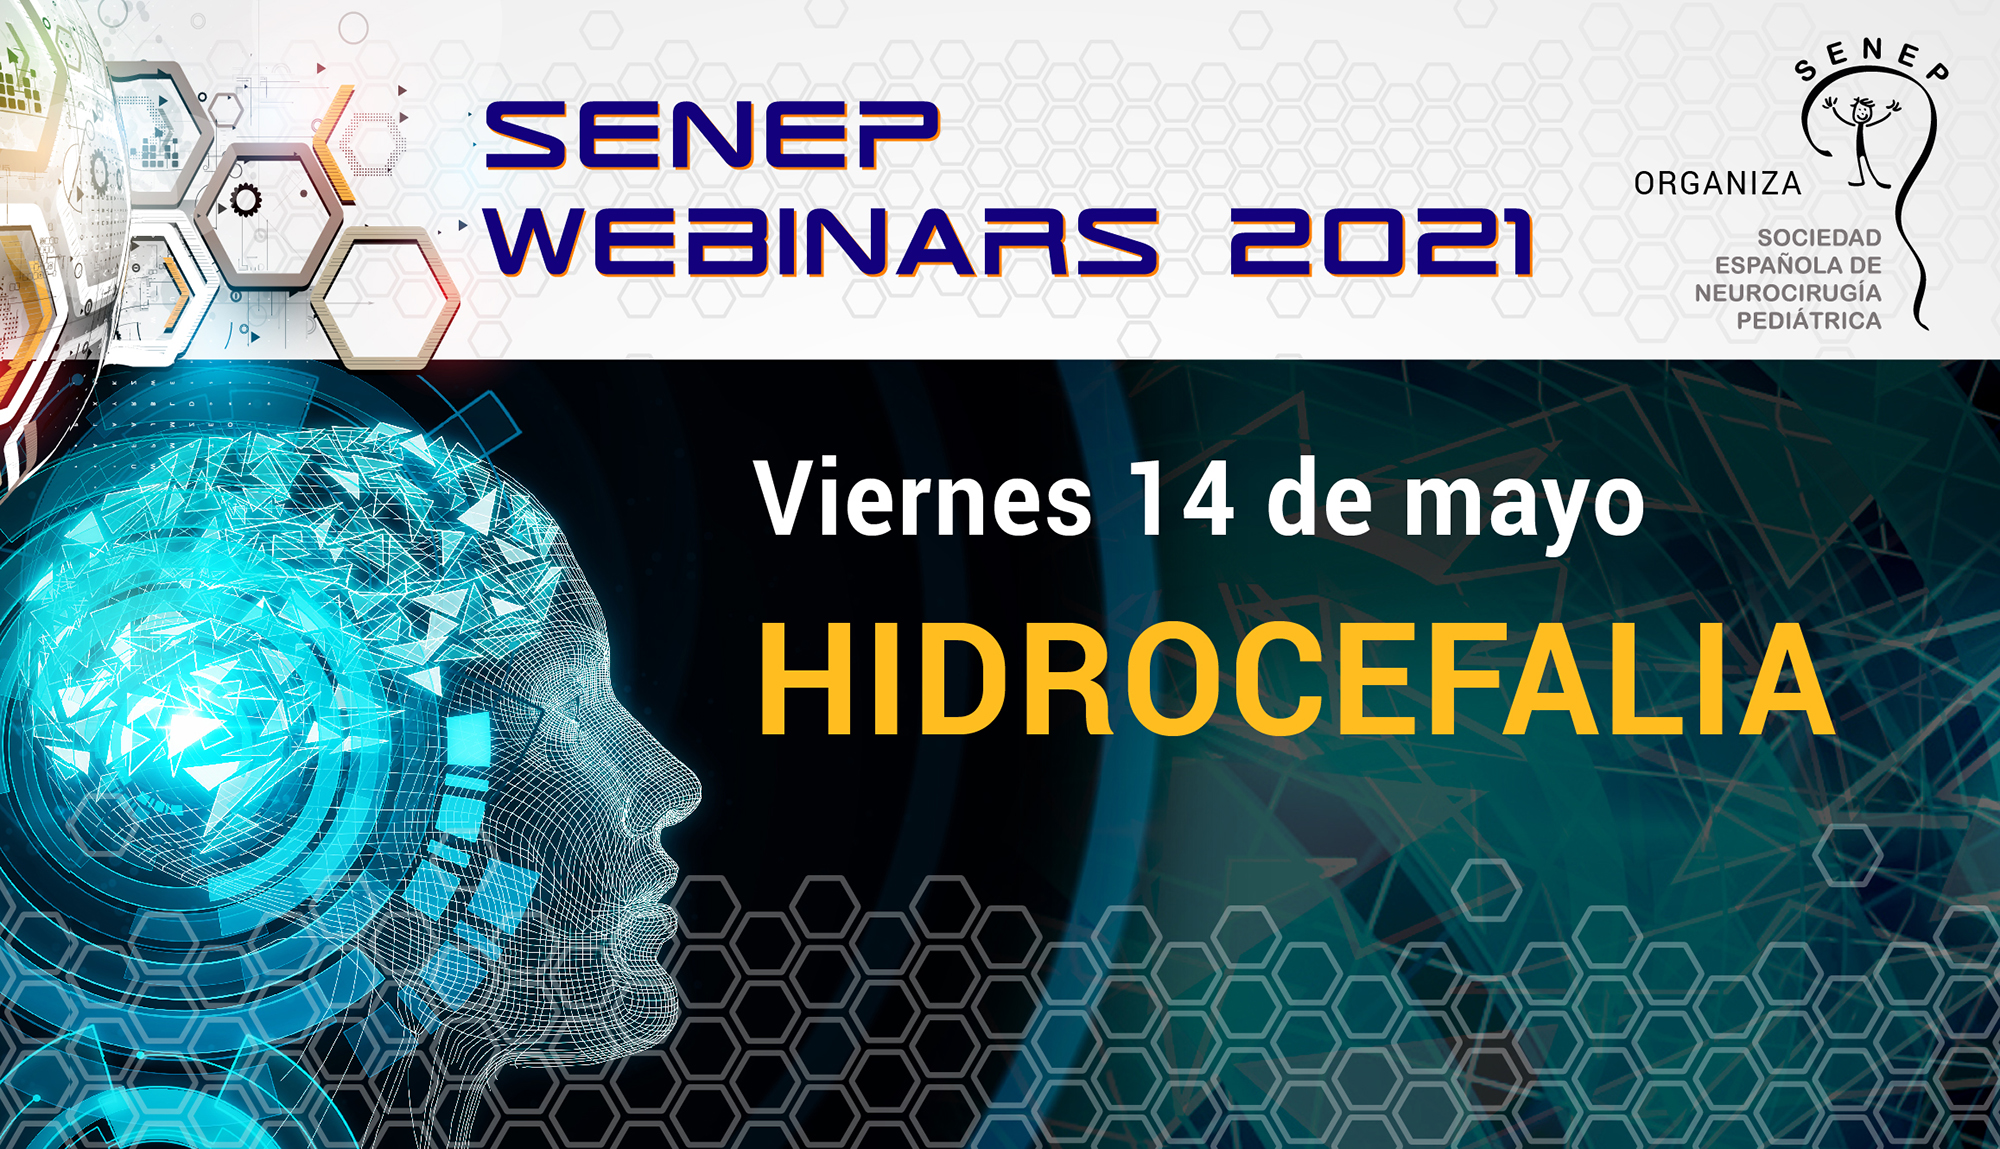 SENEPE Webinar Hidrocefalia 14 de mayo de 2021 SENEPE Sociedad Española de Neurocirugía Pediátrica